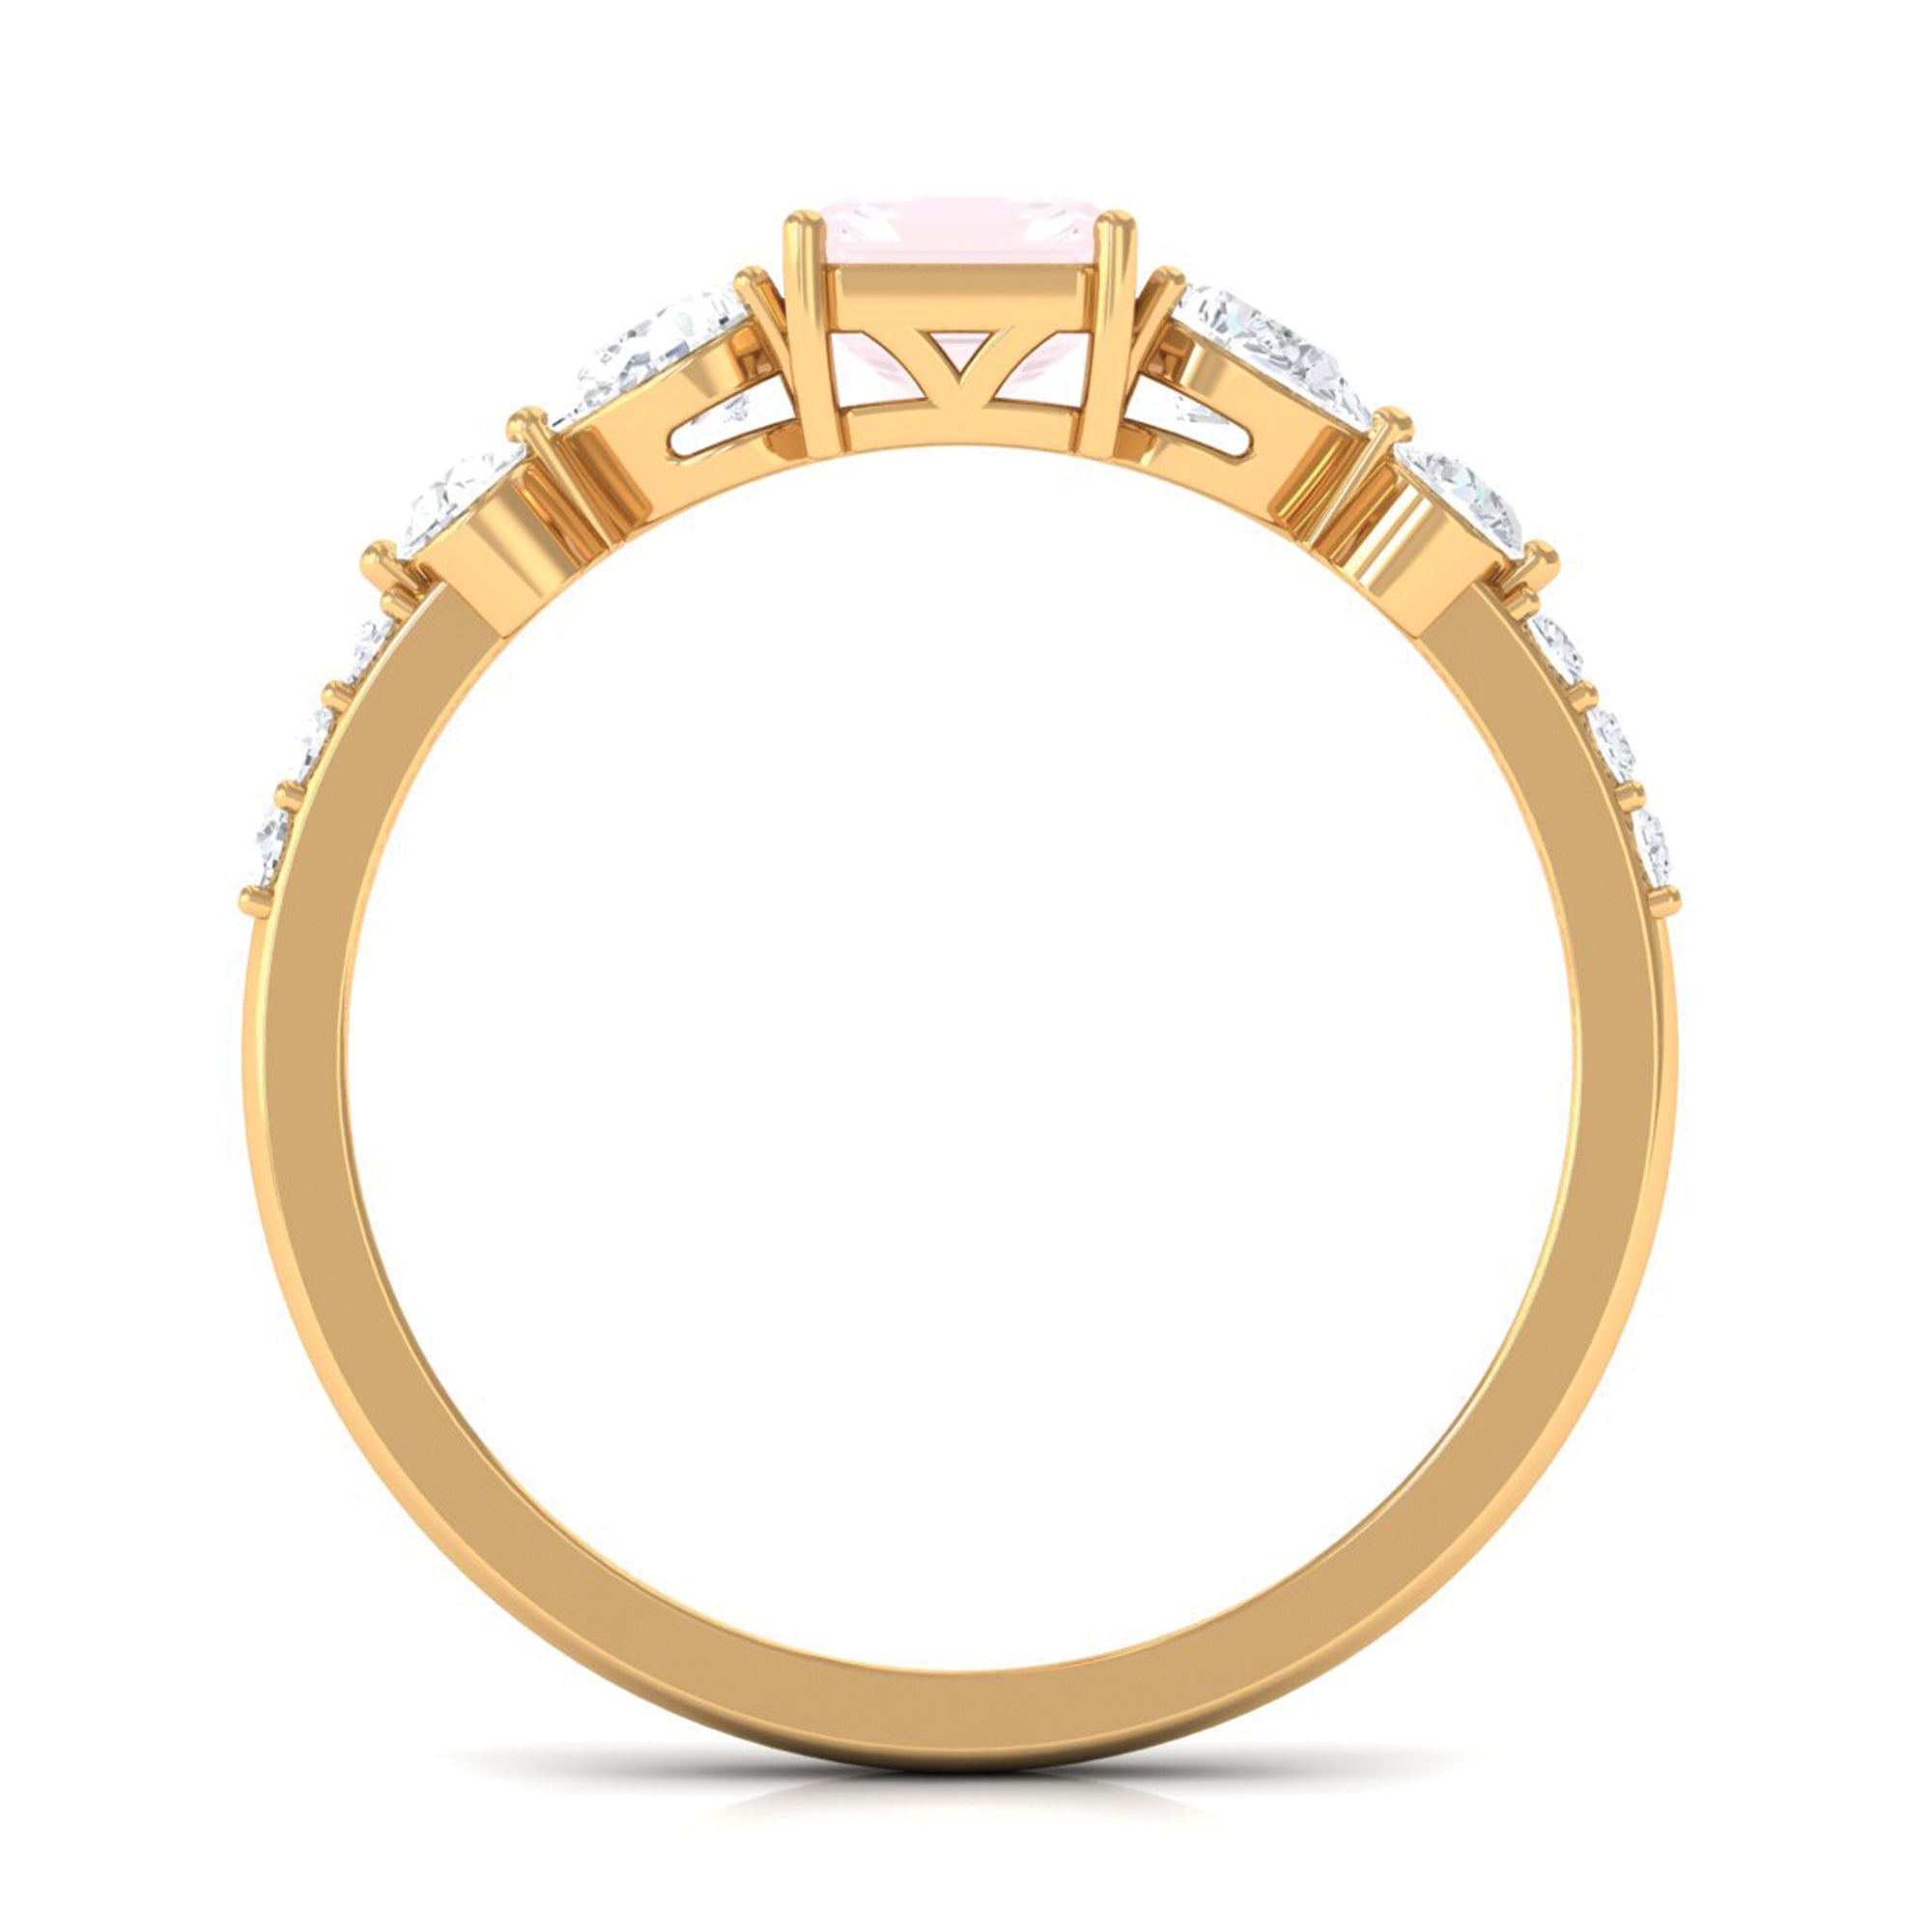 Classic Rose Quartz Solitaire Ring with Moissanite Stones Rose Quartz - ( AAA ) - Quality - Rosec Jewels